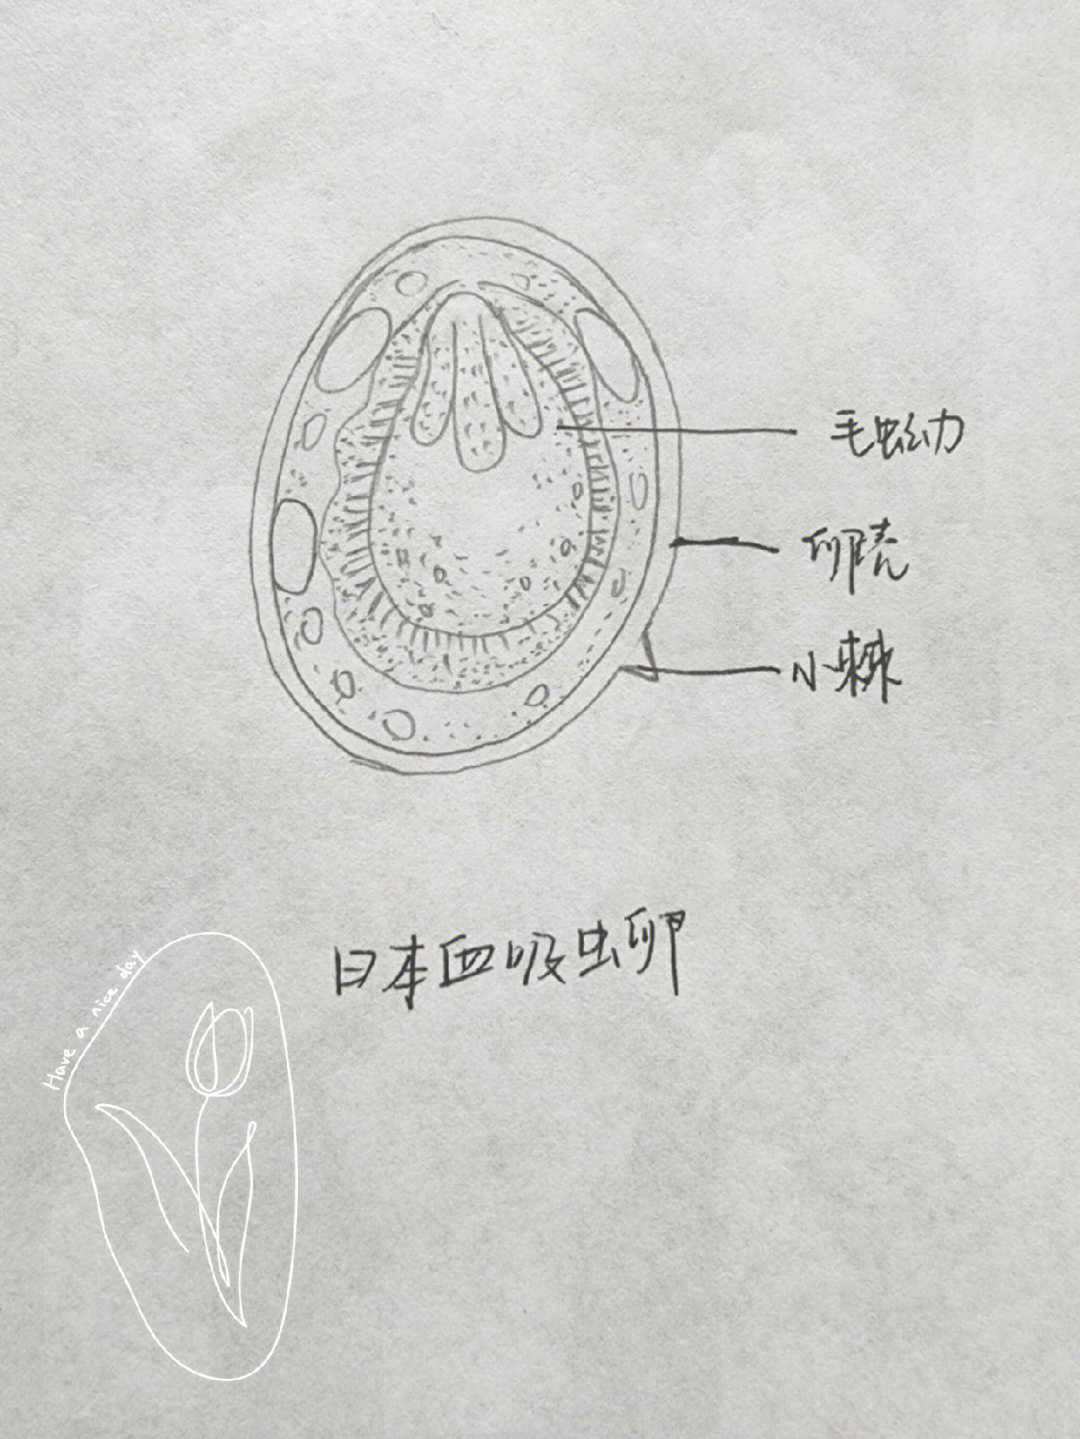 人体寄生虫学吸虫手绘图